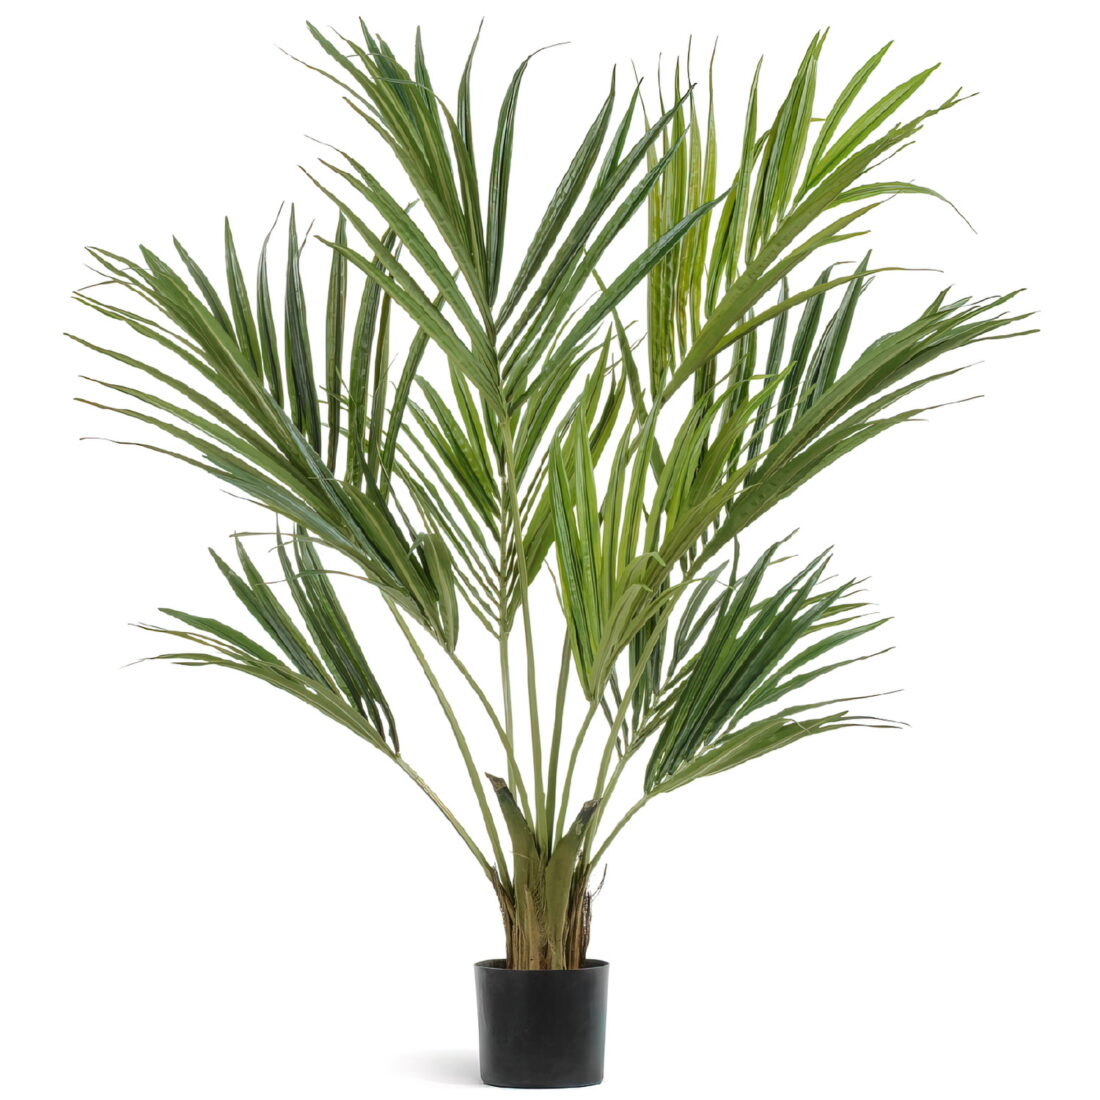 Искусственное растение Пальма Кентия (Ховея) де Люкс, высота 140 см, для напольного кашпо